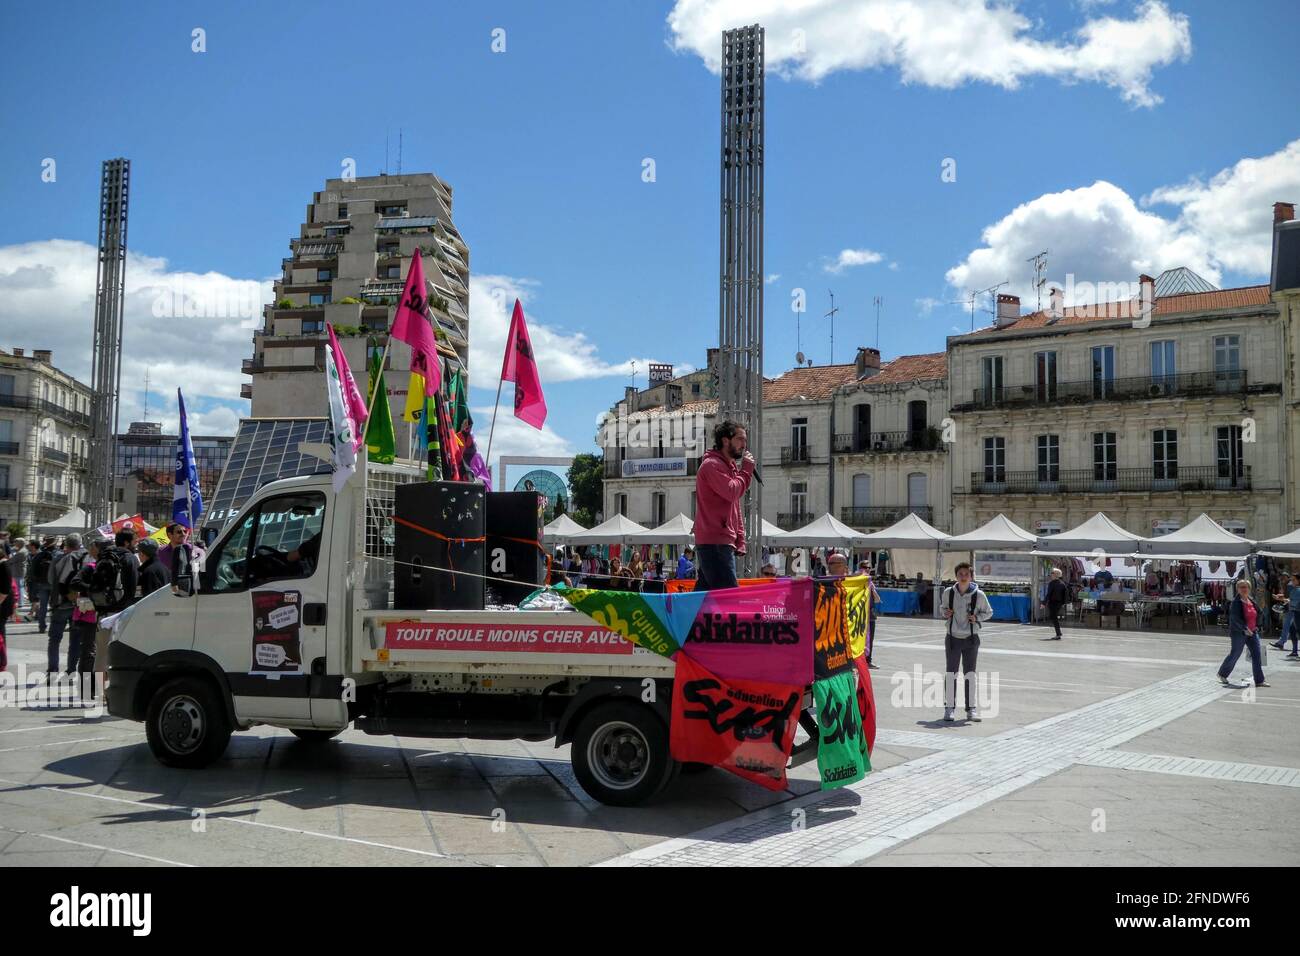 Union Truck ralliant des gens sur Comedy Plaza, centre-ville de Montpellier, Occitanie, sud de la France Banque D'Images